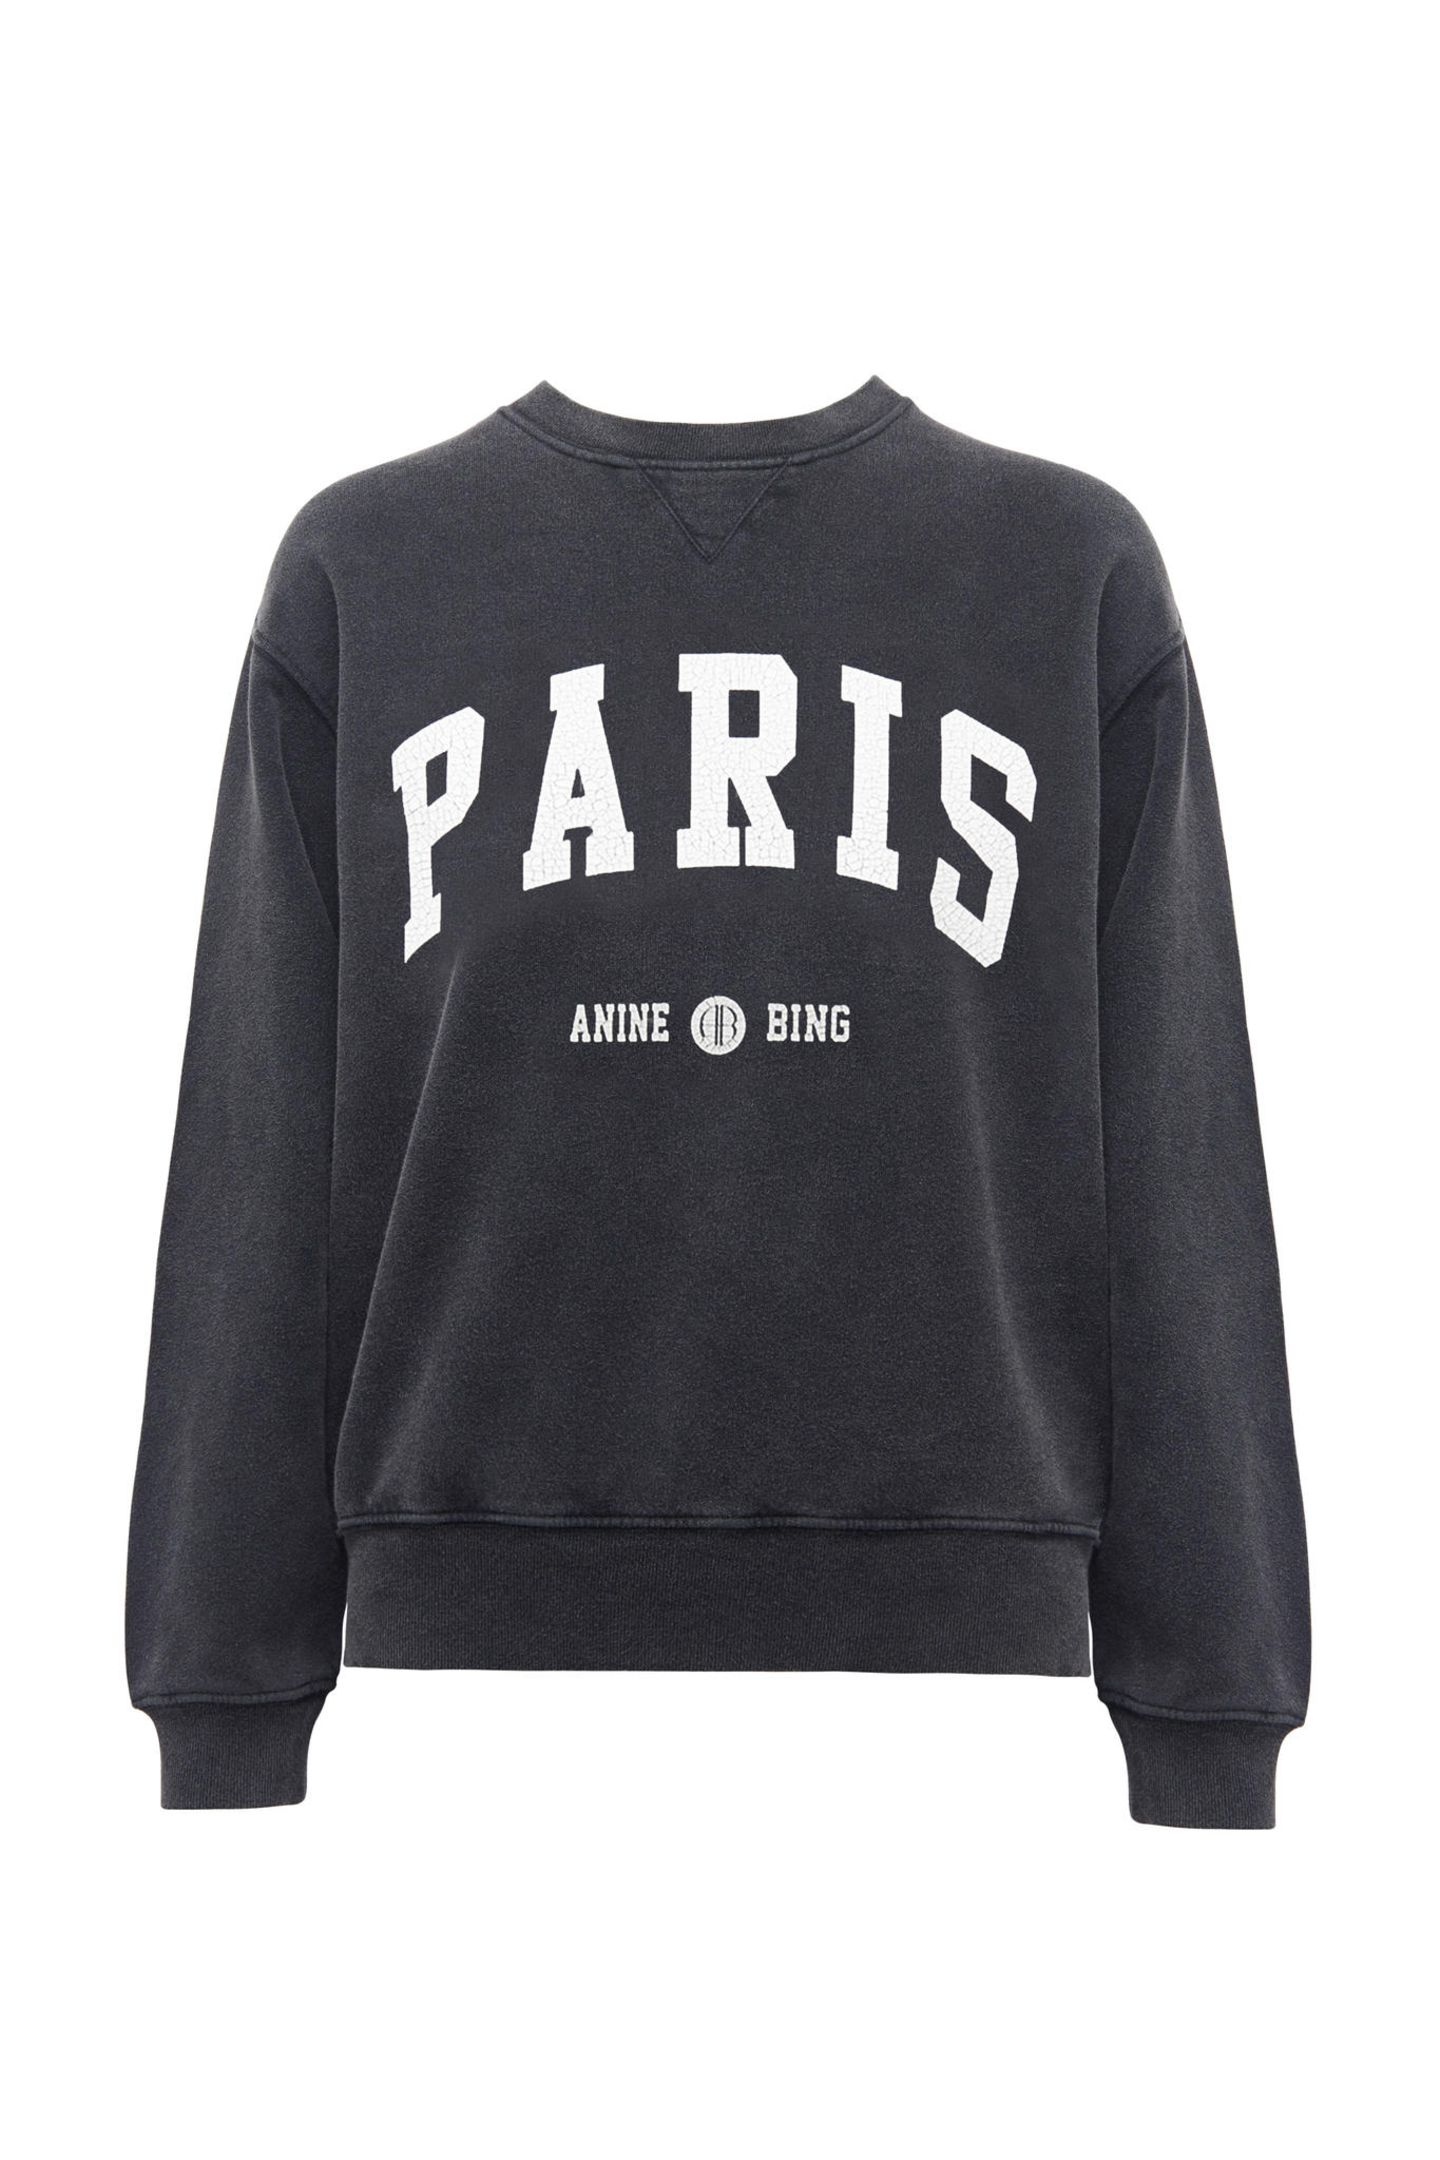 Das "Sweater-Weather" ist zwar hoffentlich bald vorbei, doch auf dieses stylishes Sweatshirt von Anine Bing möchte wir trotzdem nicht verzichten! Ca. 170 Euro.